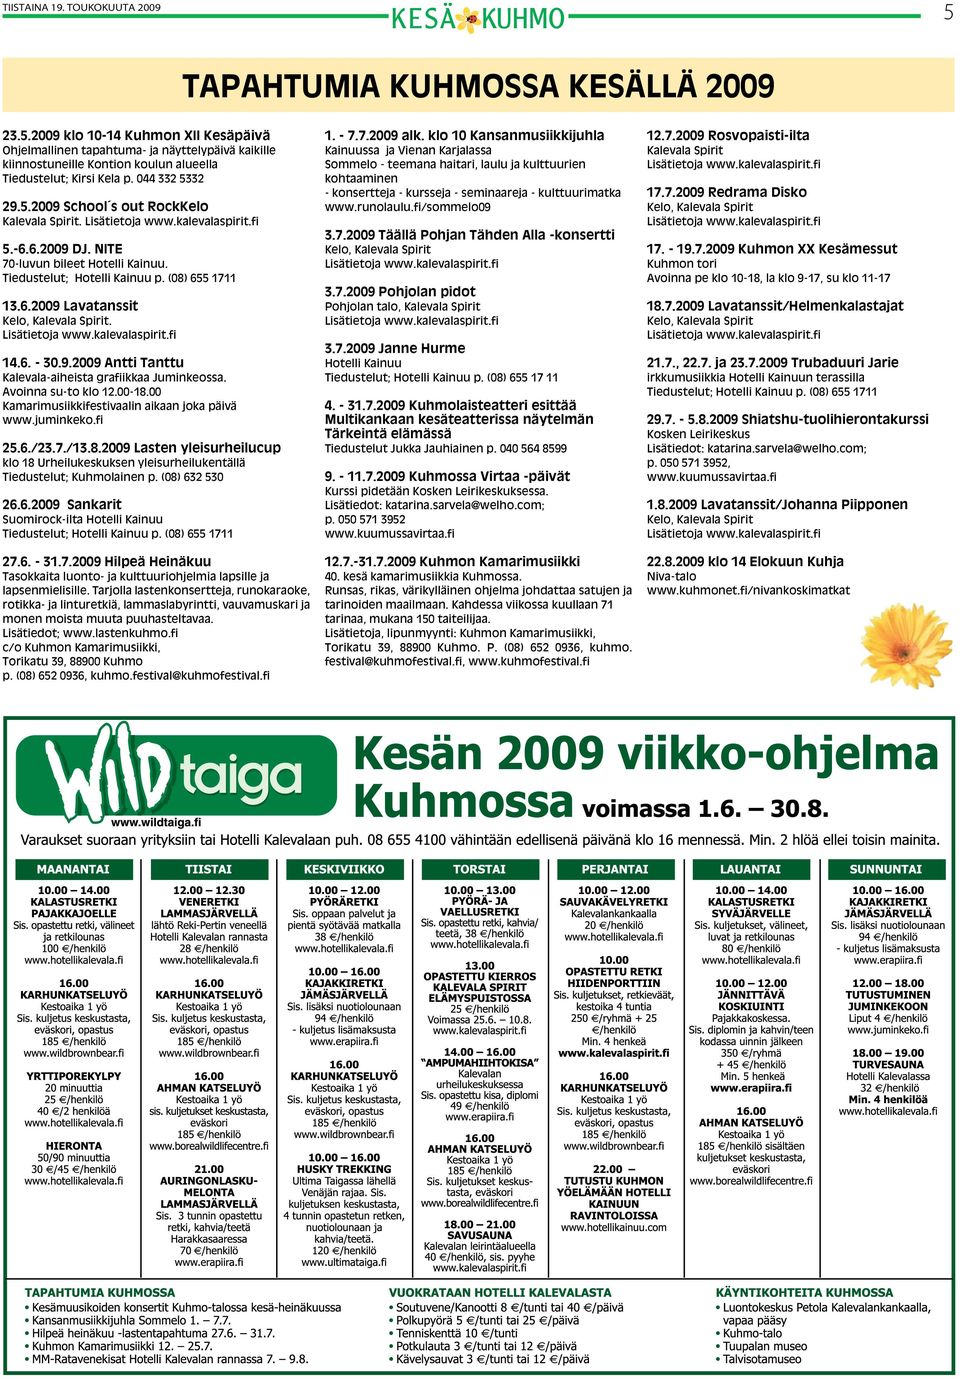 Lisätietoja www.kalevalaspirit.fi 14.6. - 30.9.2009 Antti Tanttu Kalevala-aiheista grafiikkaa Juminkeossa. Avoinna su-to klo 12.00-18.00 Kamarimusiikkifestivaalin aikaan joka päivä www.juminkeko.